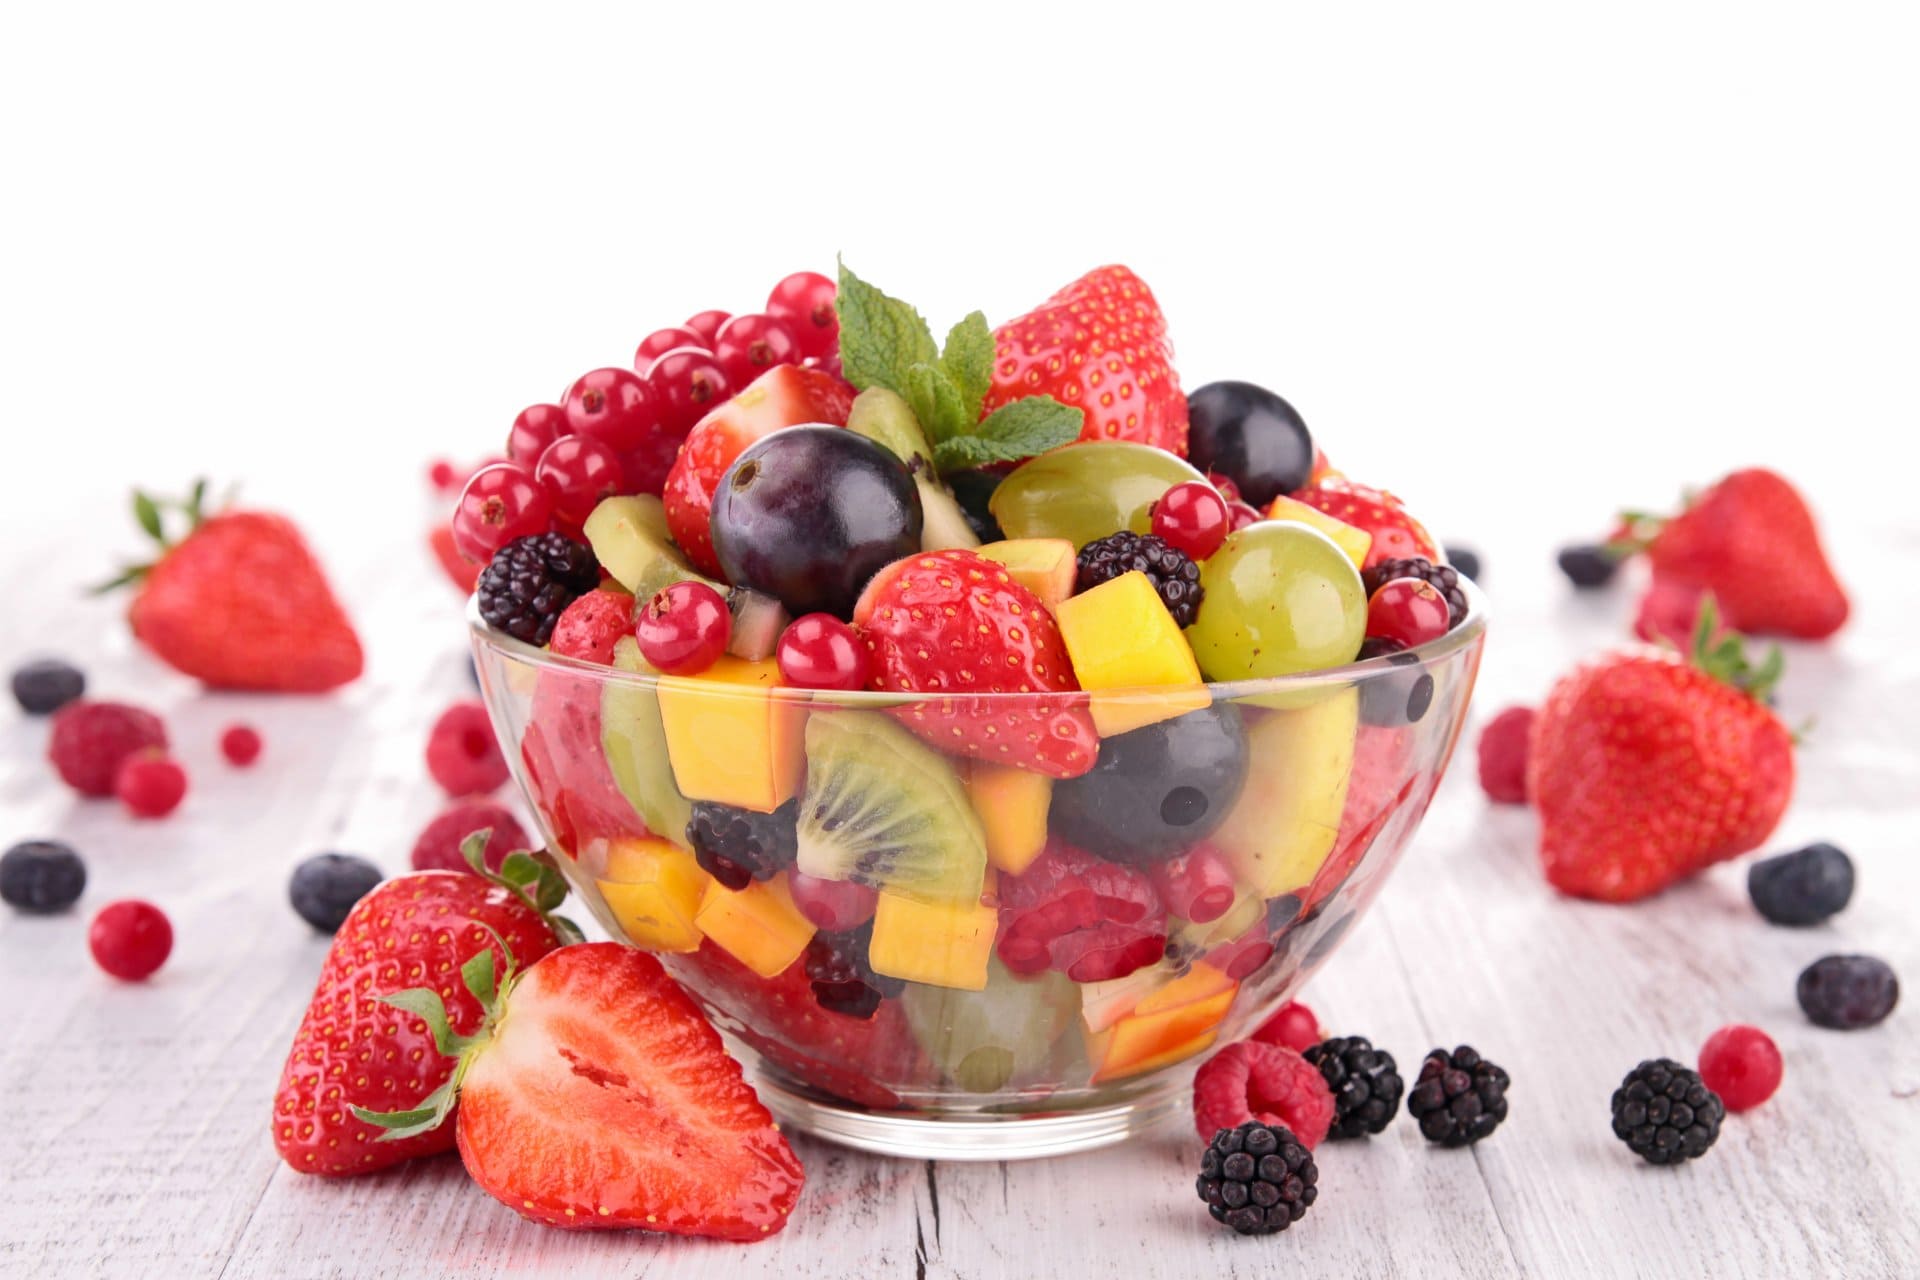 Правила перевозки: свежие ягоды и фрукты